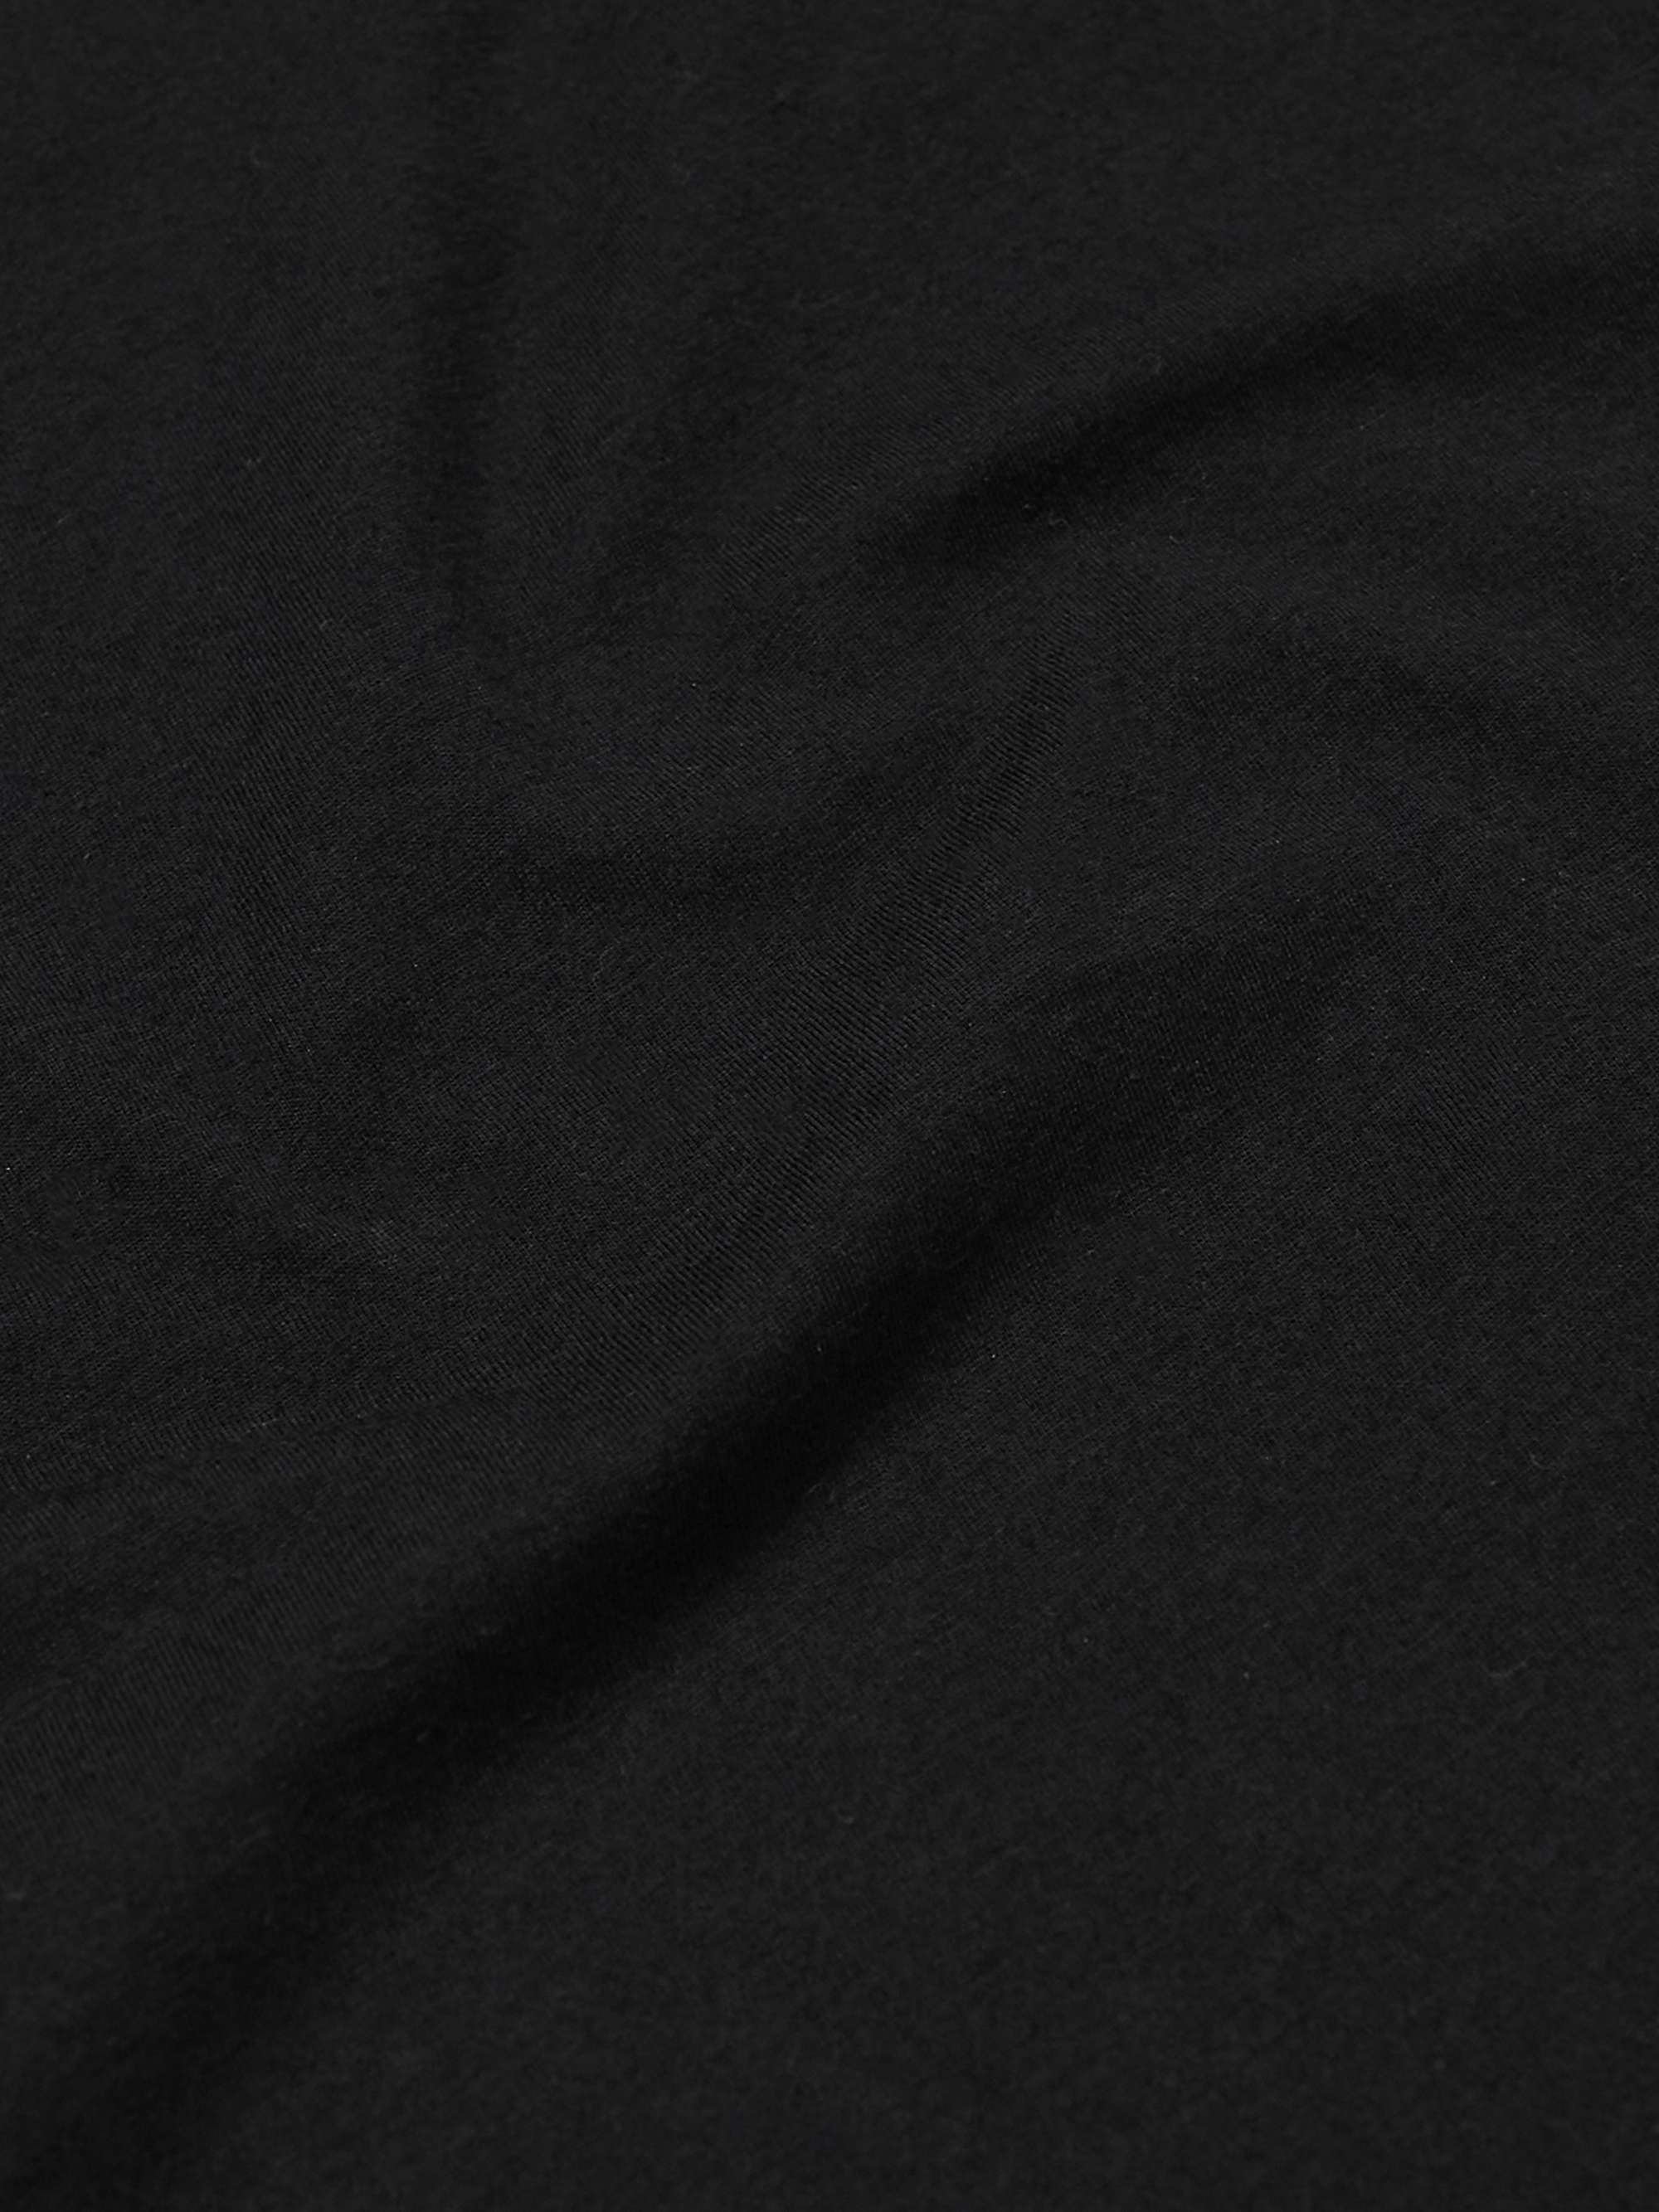 DEREK ROSE Cotton-Jersey T-Shirt